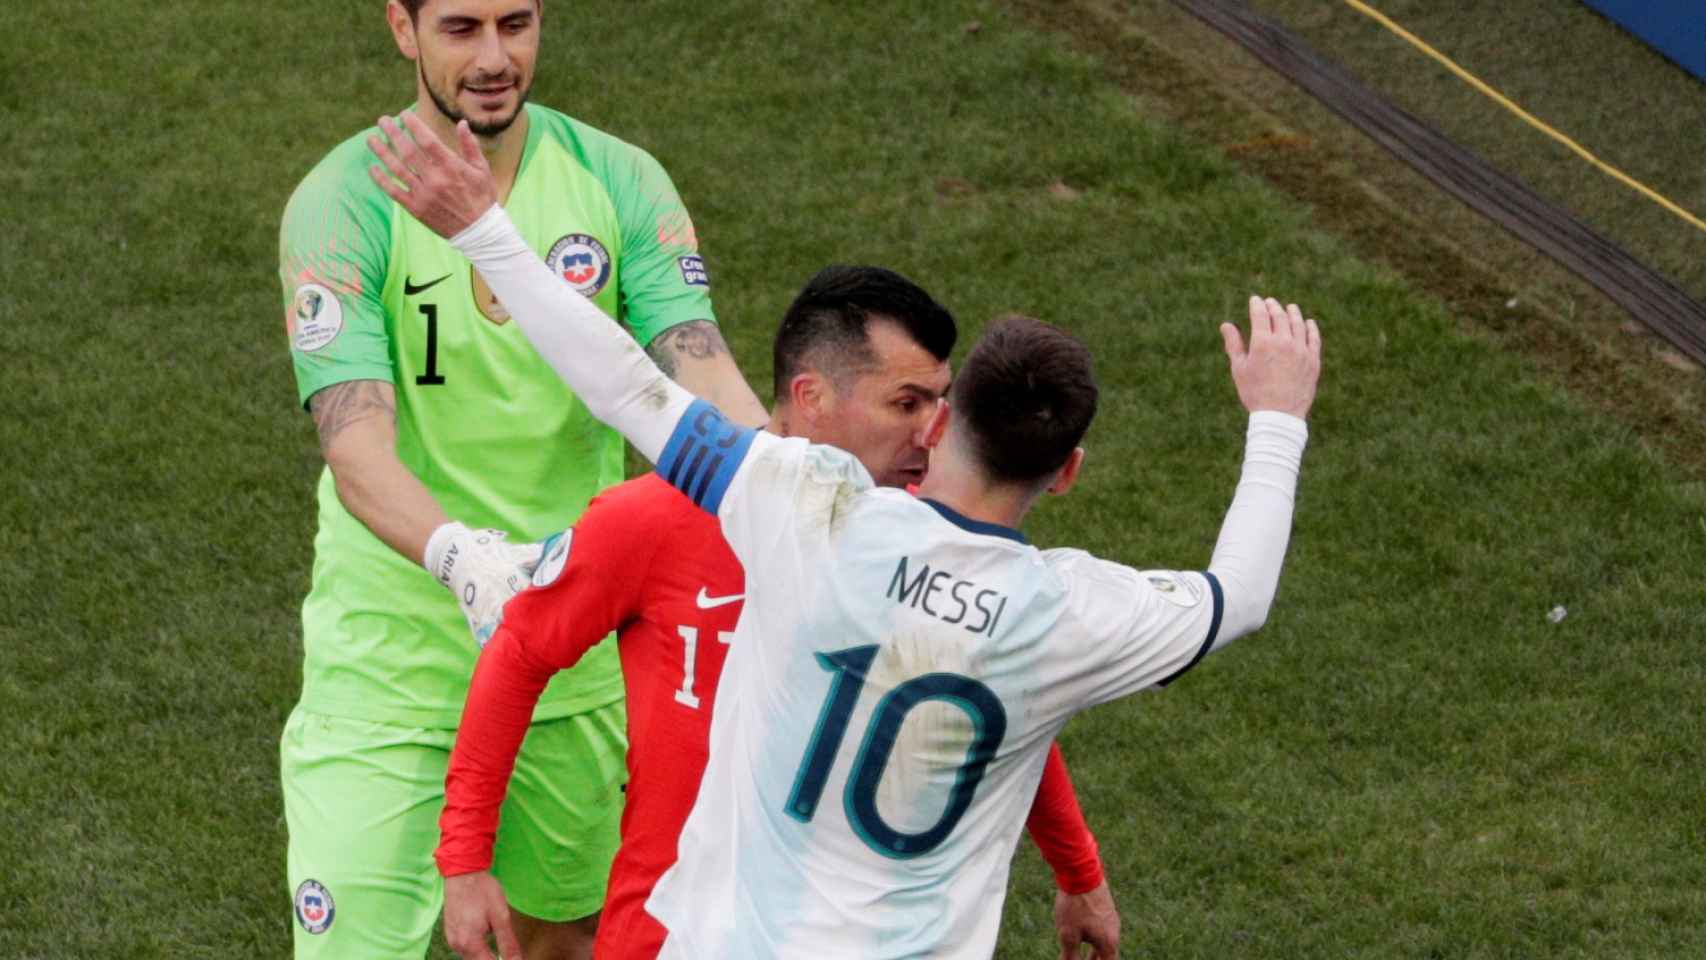 El choque de cabezas de Medel y Messi en el Argentina - Chile de la Copa América 2019